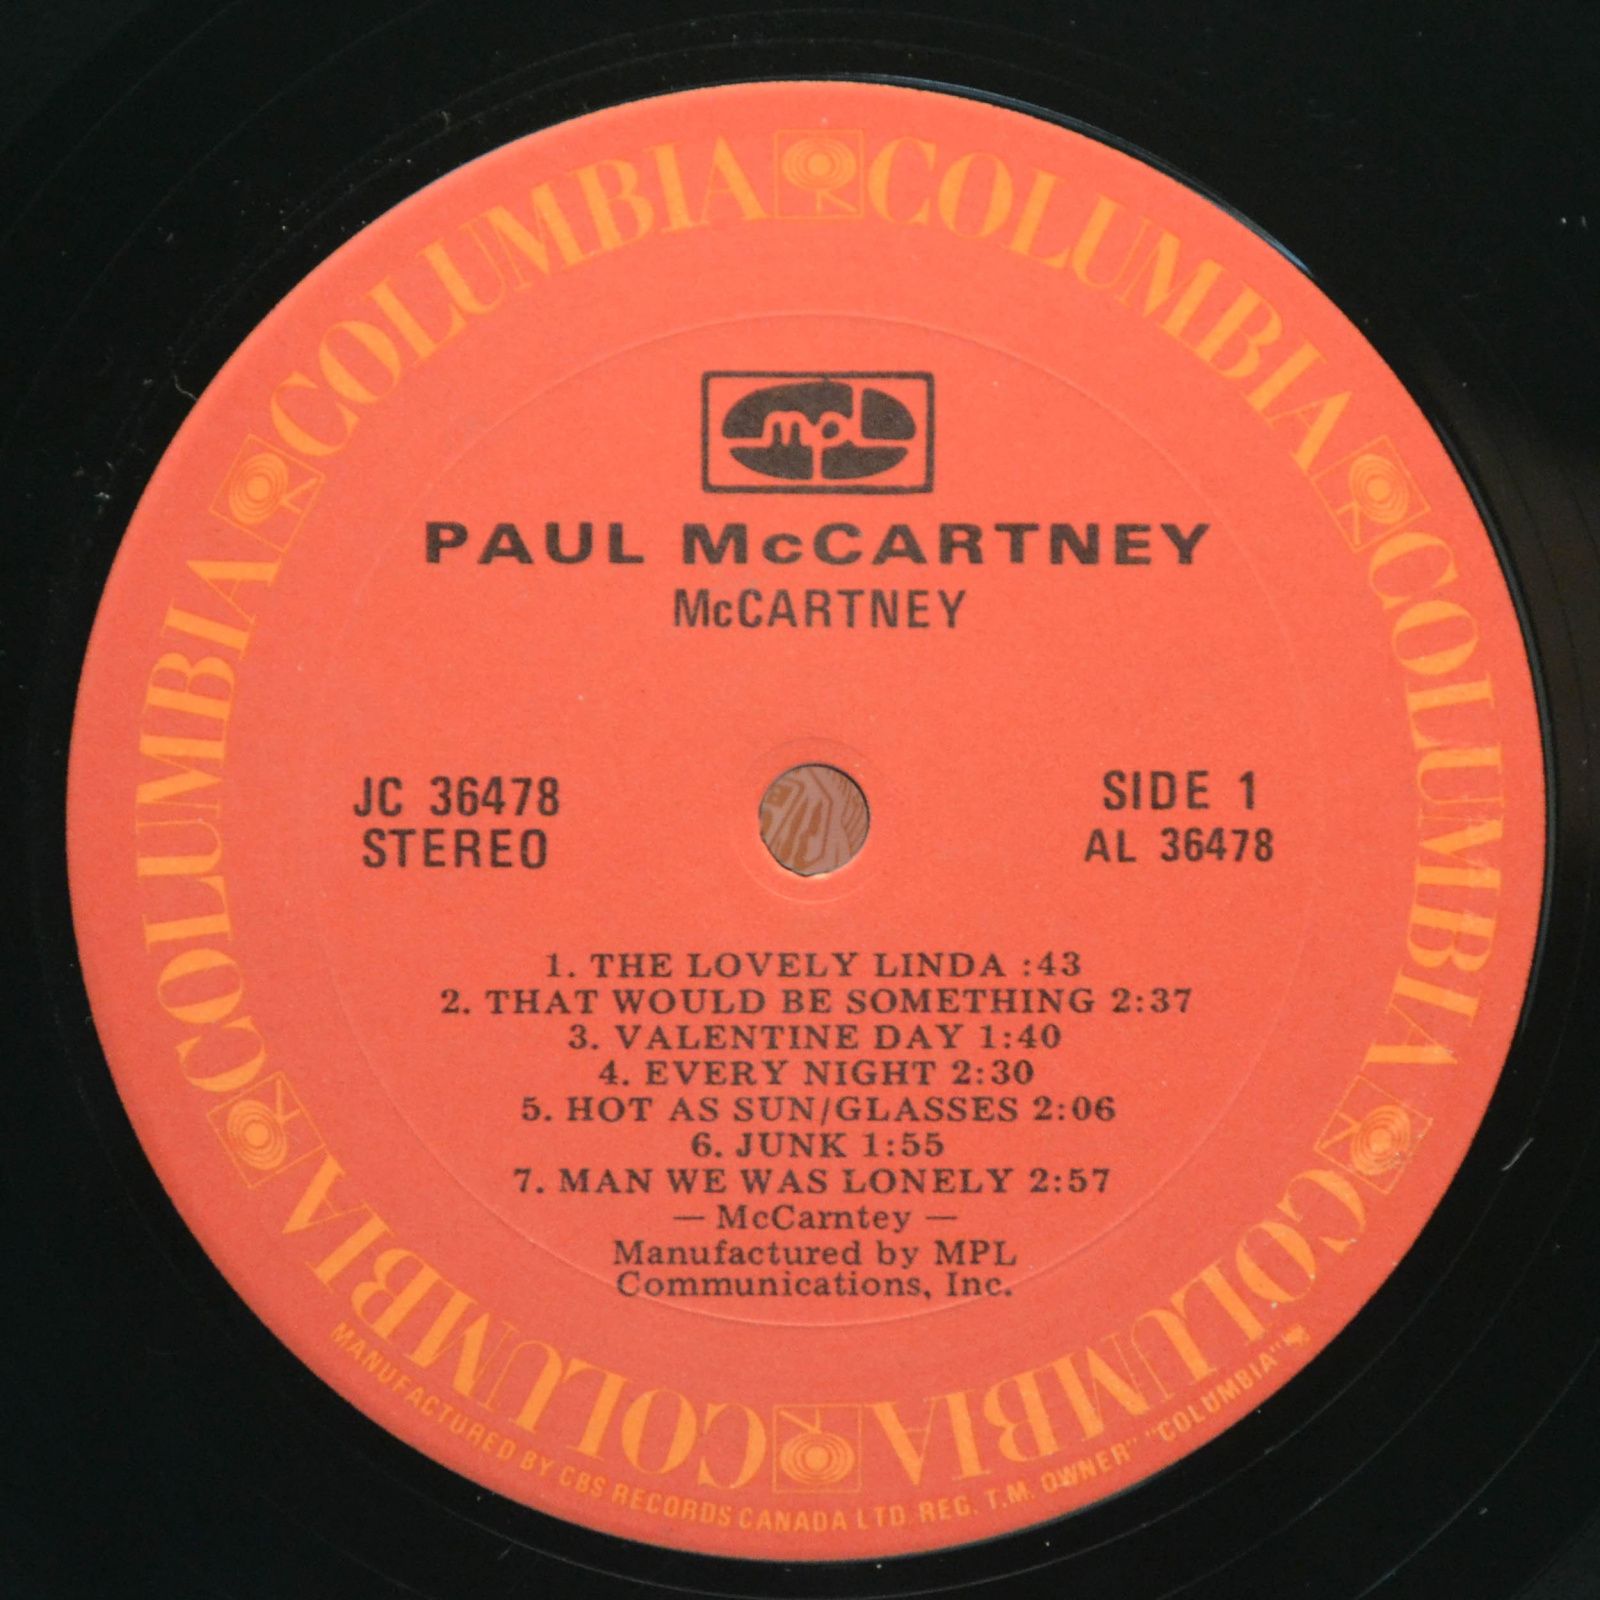 McCartney — McCartney, 1980